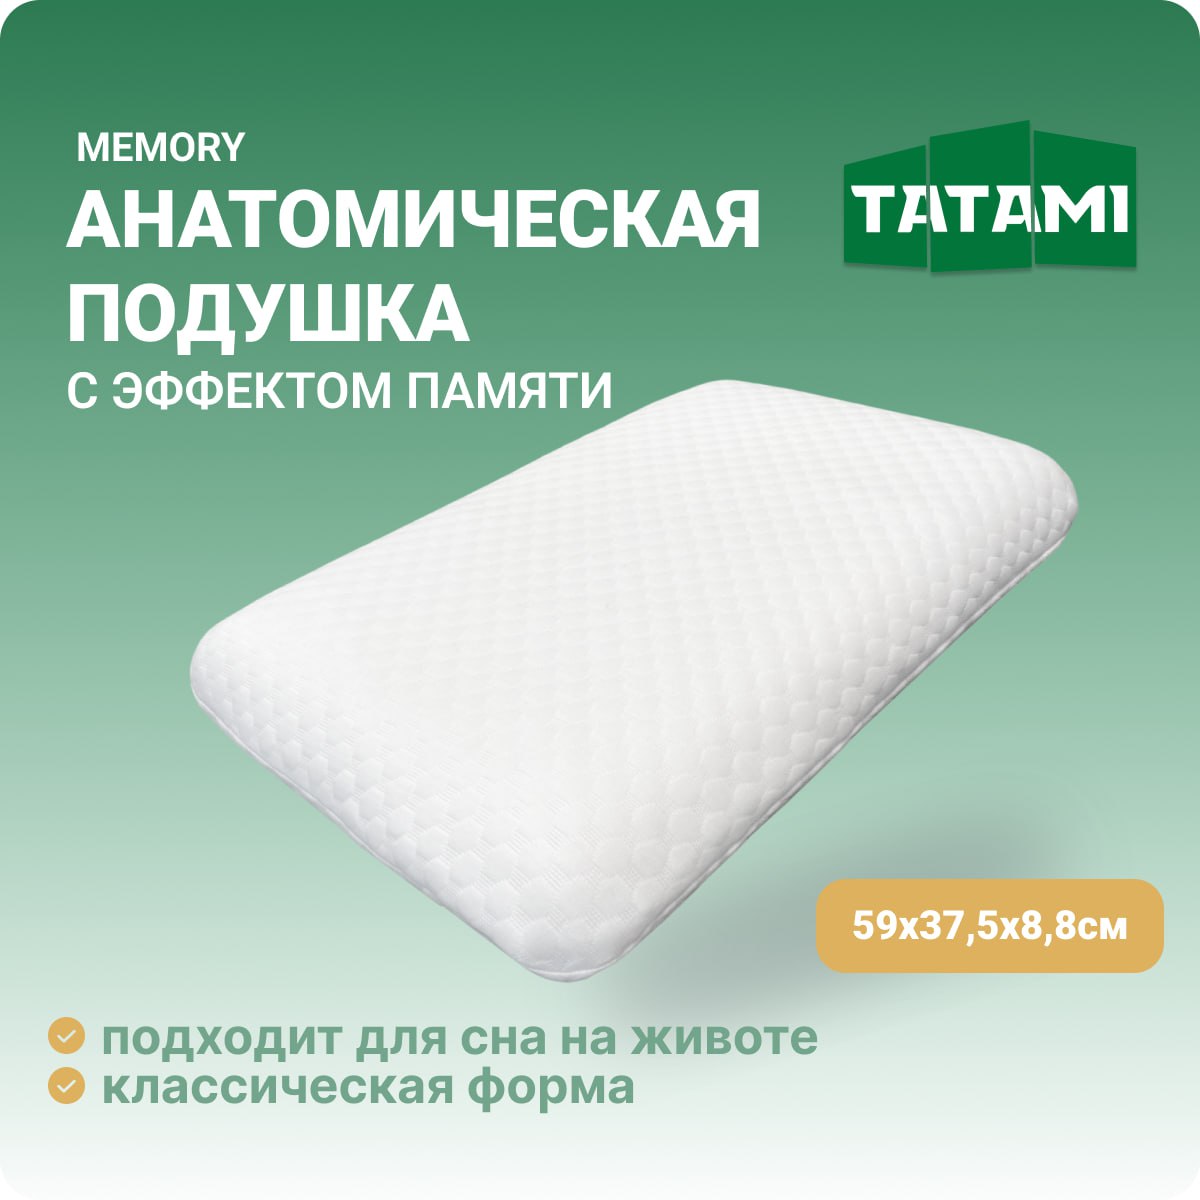 Ортопедическая подушка для сна с эффектом памяти Tatami Memory 38x59 см, высота 8.8 см